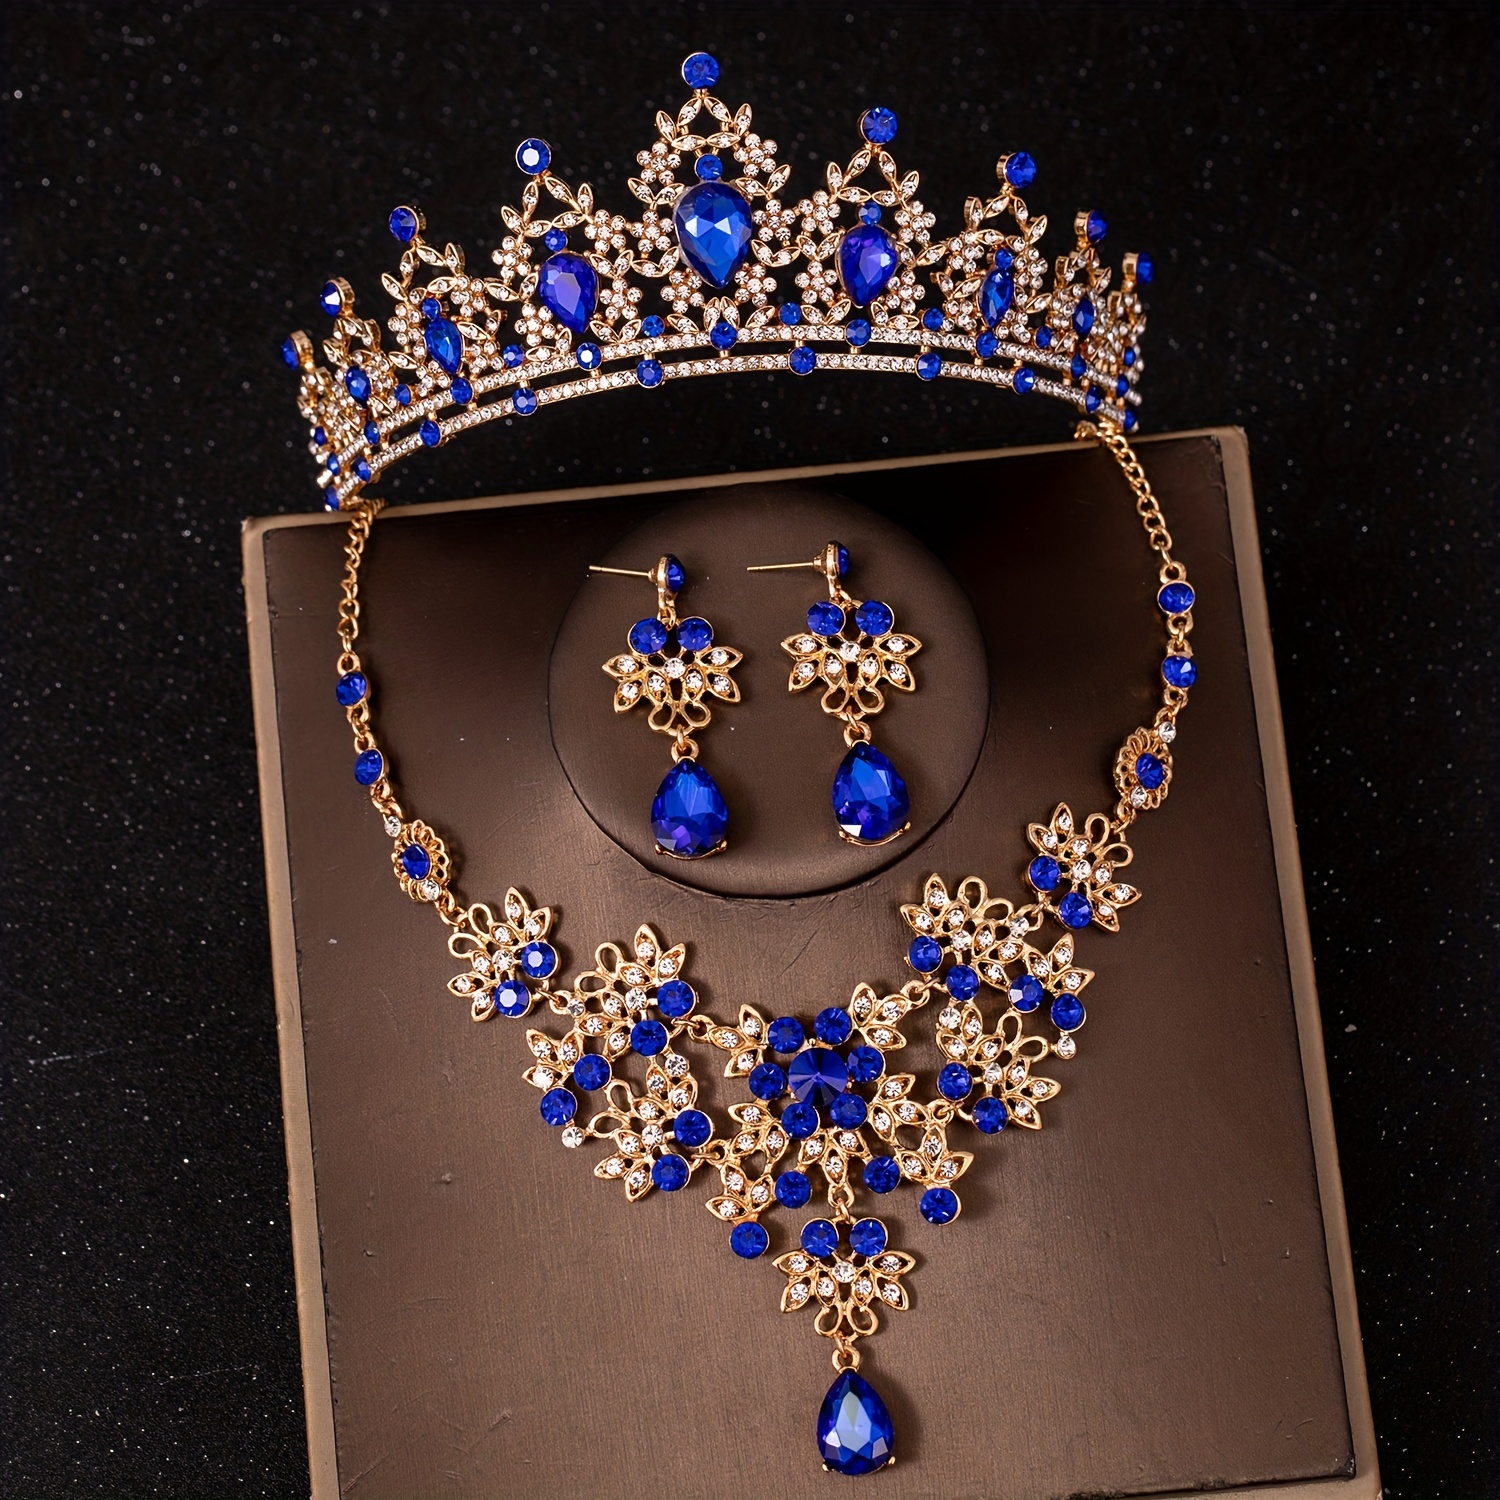 3 Teile/satz Blau Strass Prinzessin Königin Krone Halskette